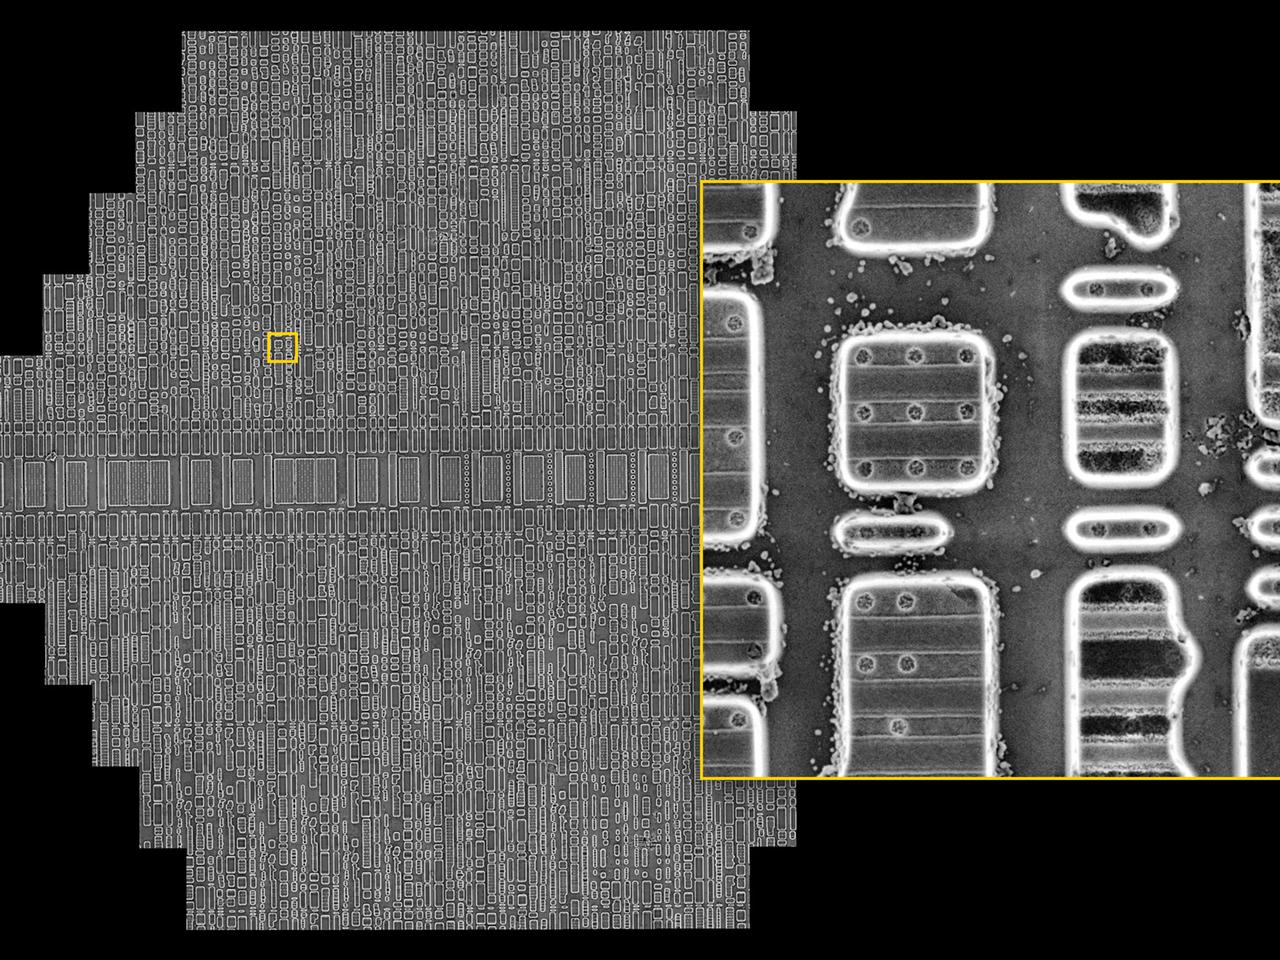 Integrierter Schaltkreis eines Grafikprozessors (65-nm-Technologieknoten), der durch HF-Ätzung bis auf sein Siliziumsubstrat zerlegt ist.